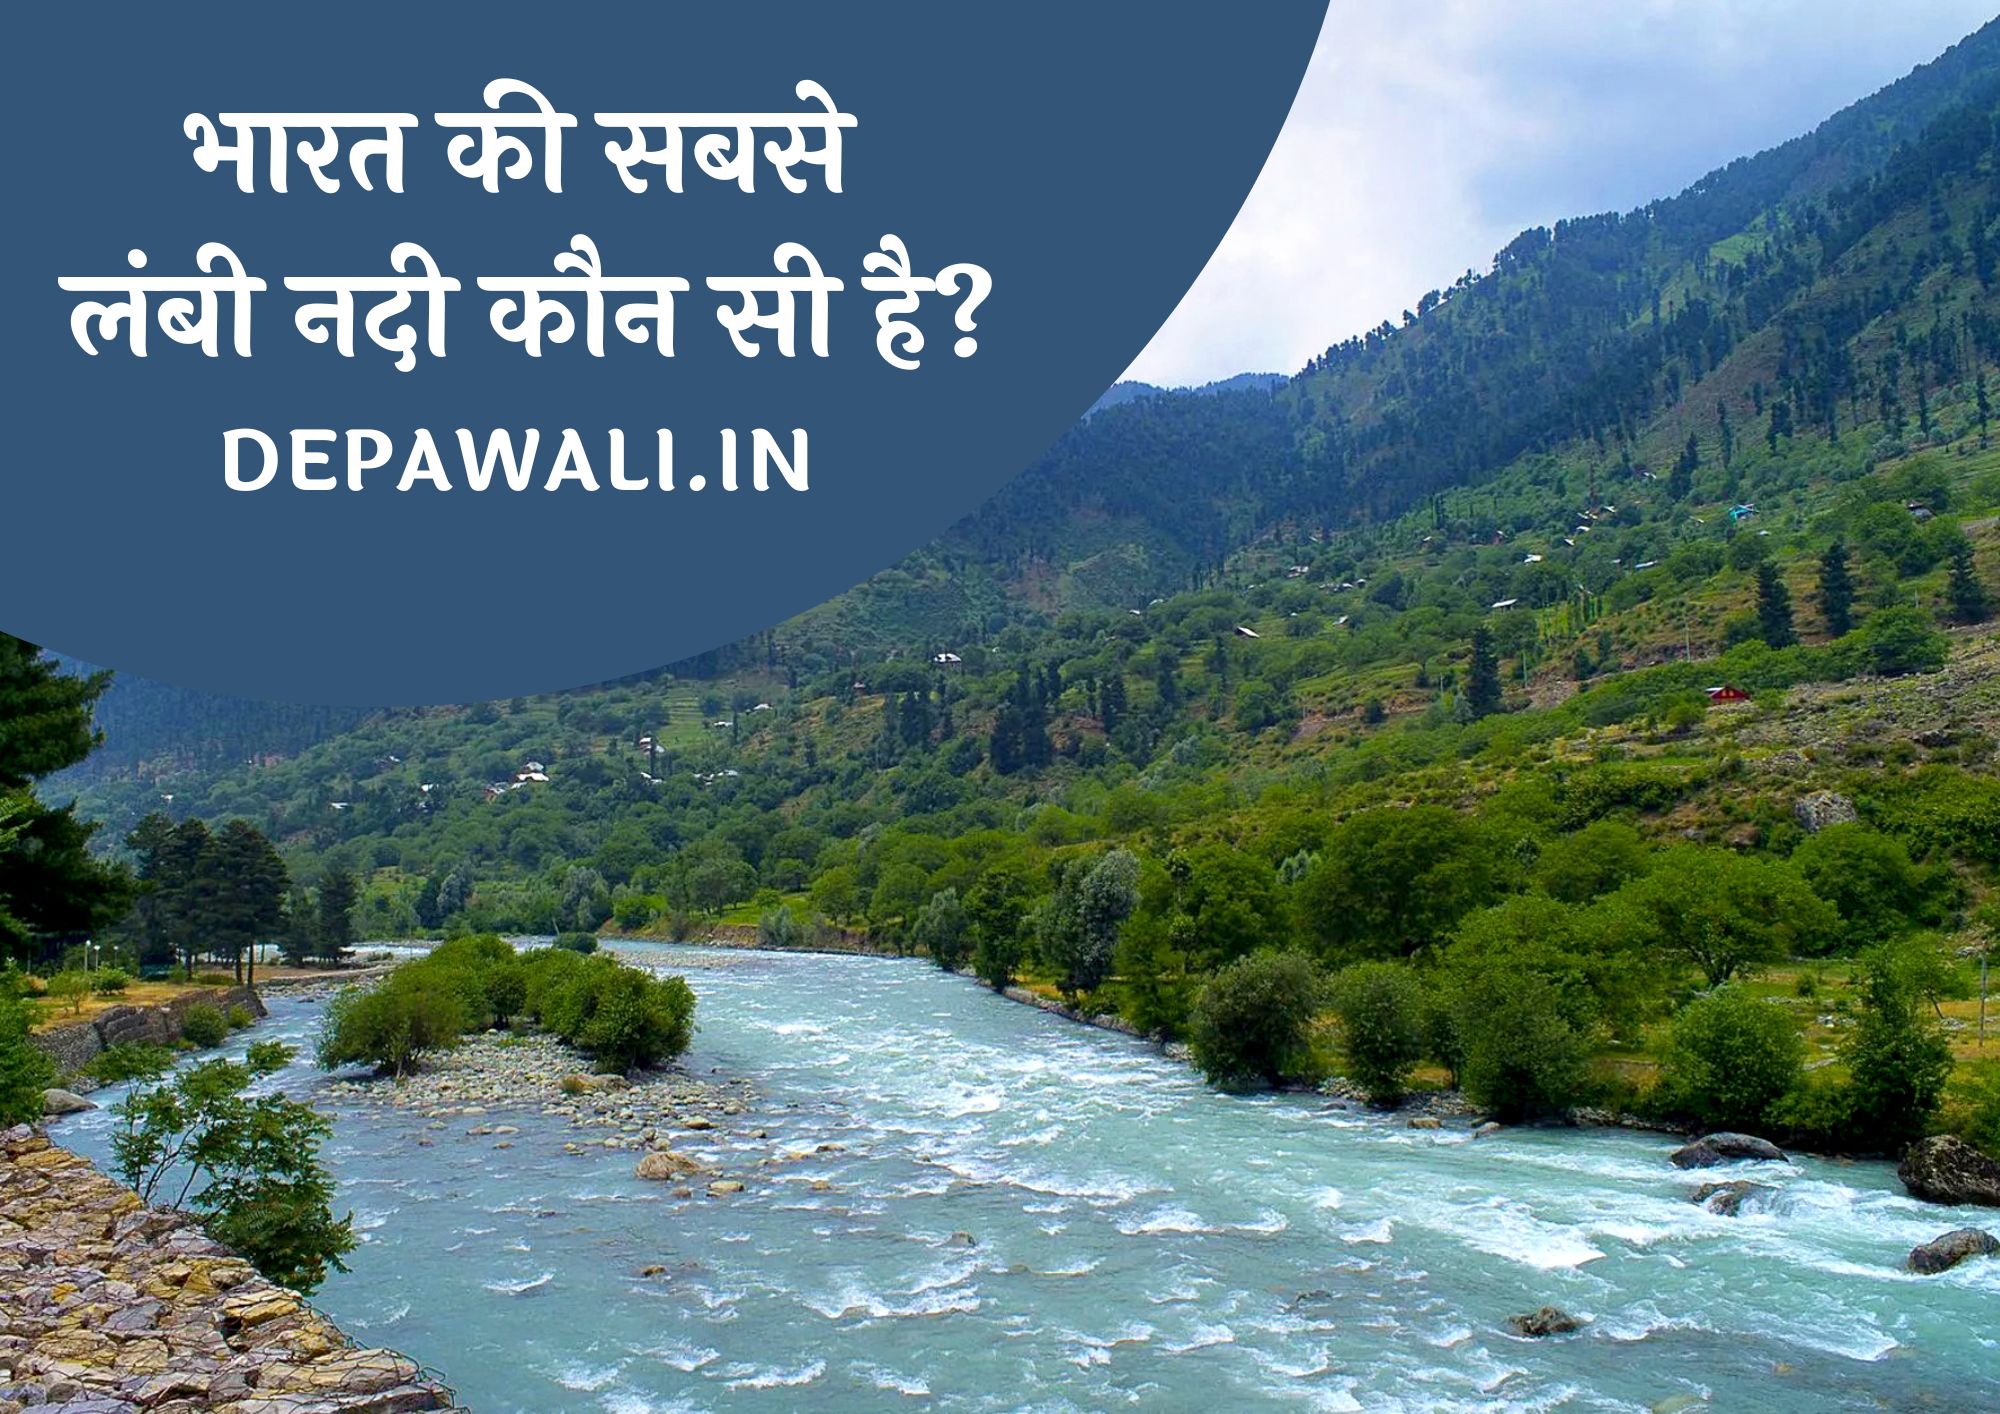 भारत की सबसे लंबी नदी कौन सी है, भारत में सबसे लंबी नदी कौन सी है - Bharat Mein Sabse Lambi Nadi Kaun Si Hai | Bharat Ki Sabse Lambi Nadi Kaun Si Hai